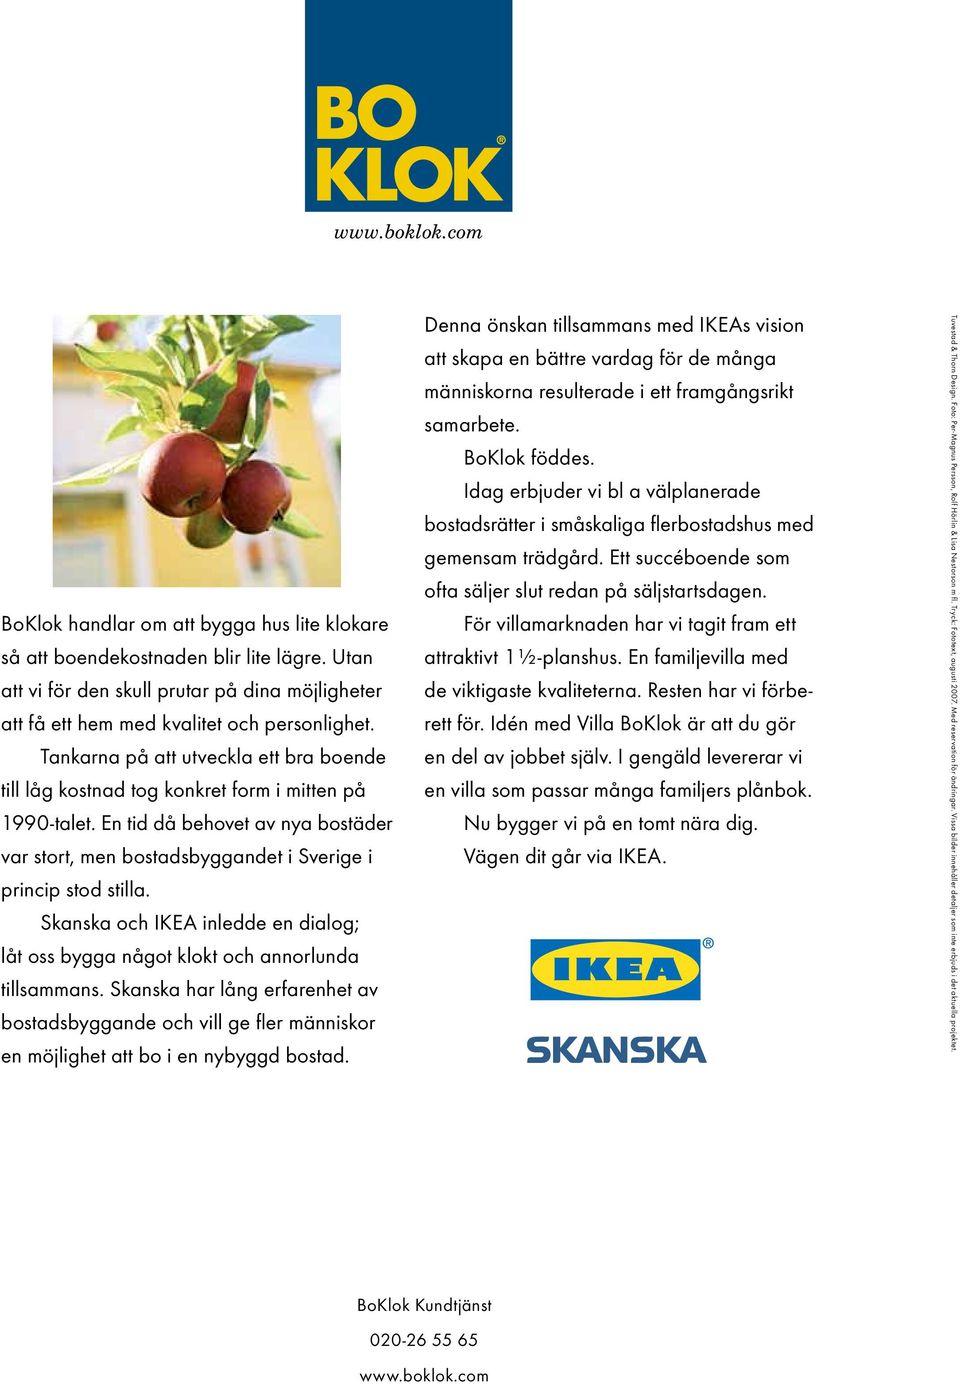 Skanska och IKEA inledde en dialog; låt oss bygga något klokt och annorlunda tillsammans.